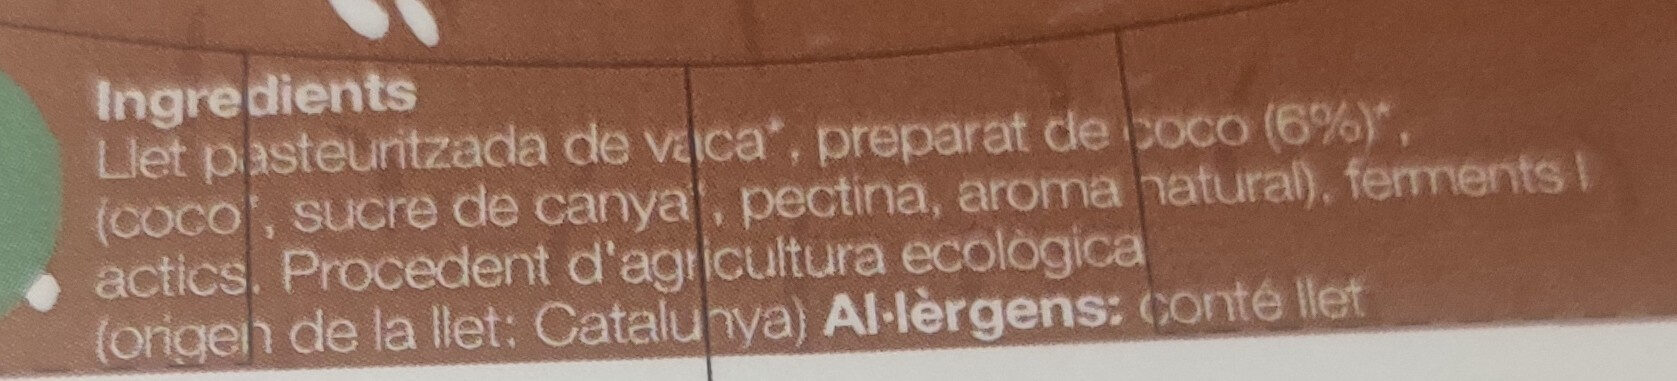 yogurt coco - Ingredients - es